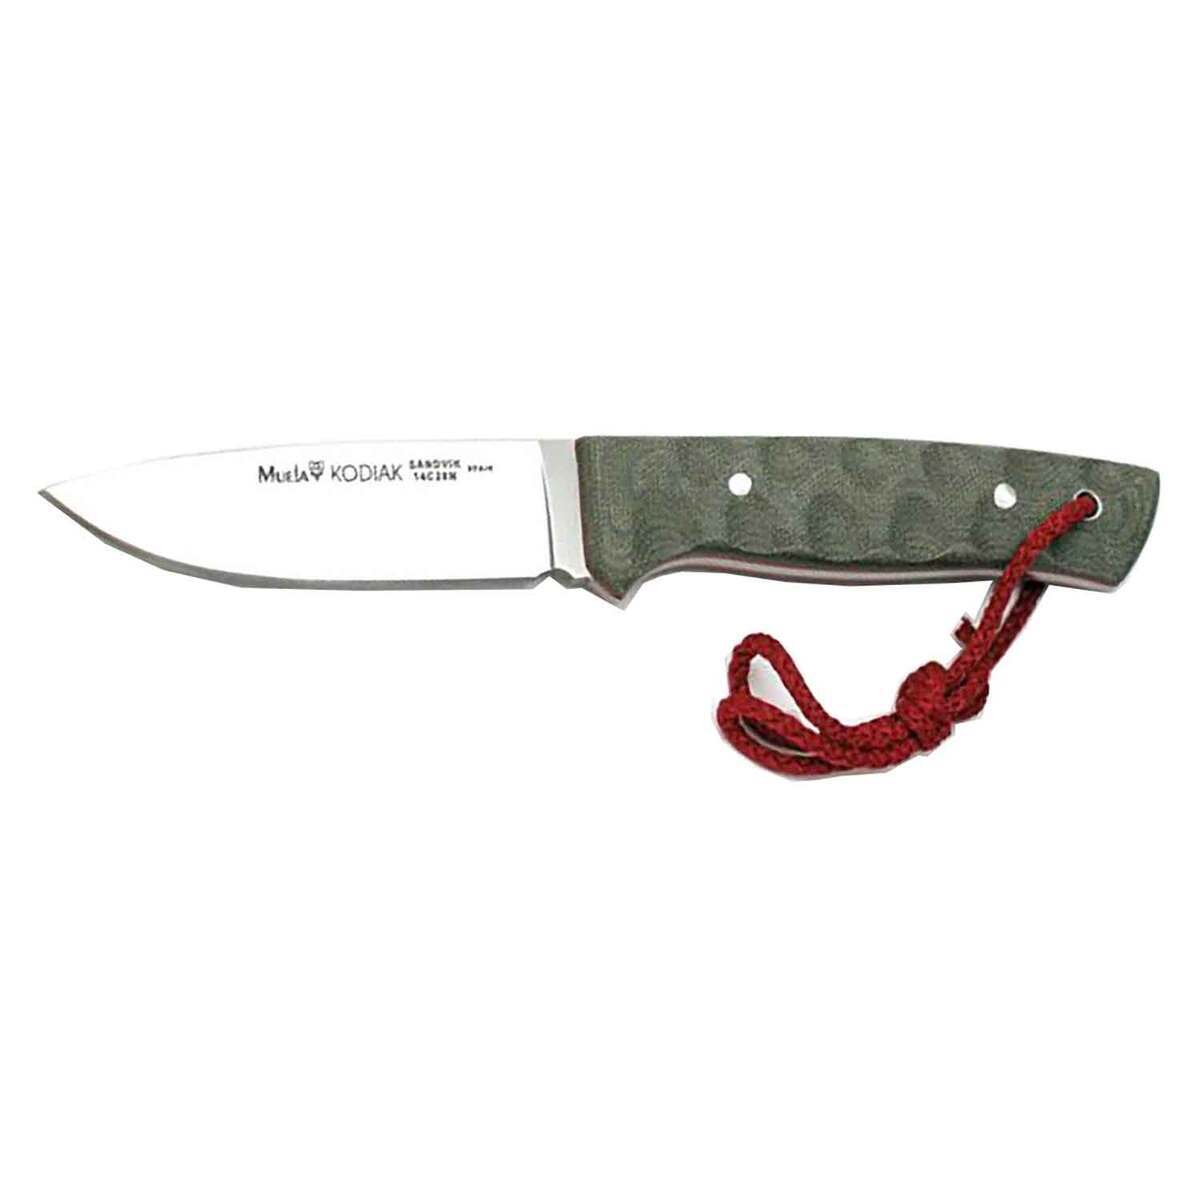 https://www.knives.com/medias/ruko-kodiak-4-inch-fixed-blade-knife-micarta-1500219-1.jpg?context=bWFzdGVyfGltYWdlc3wzMjE4NHxpbWFnZS9qcGVnfGg0Yy9oYjQvMTA4MzA5NDk0NDk3NTgvMTUwMDIxOS0xX2Jhc2UtY29udmVyc2lvbkZvcm1hdF8xMjAwLWNvbnZlcnNpb25Gb3JtYXR8YmYwODQ4ZmFiYmJmZjRkYWQ1OTZhMTQyNzIzOTk3MzJjMGU0ZjhiZGUwOWI5YWM2NzFjNGM4ZTA5ODAyZWY5Mg